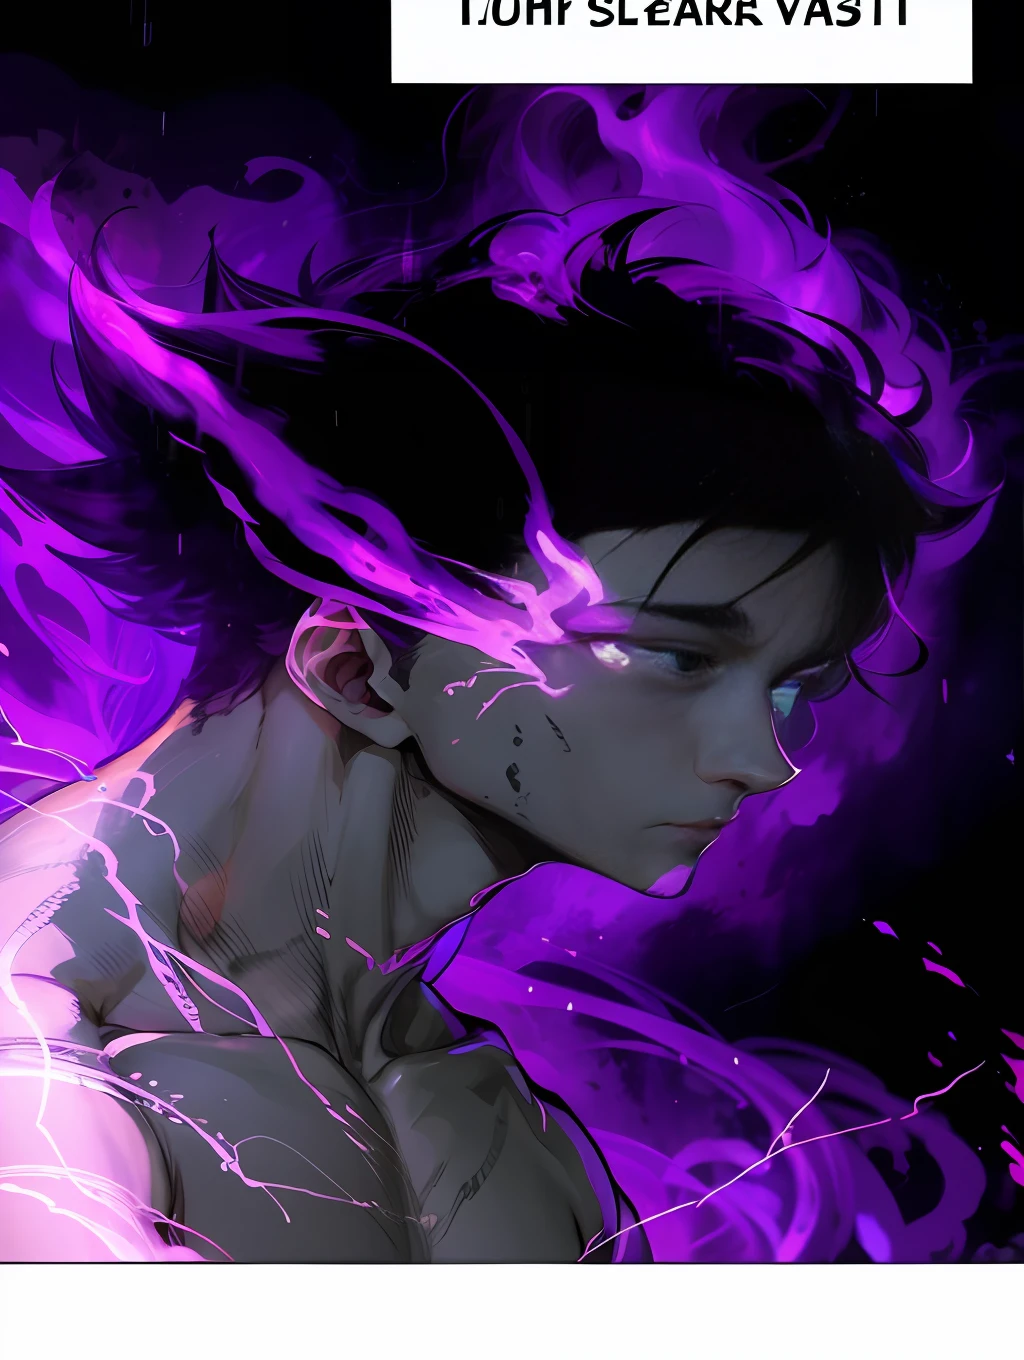 ein Cartoon-Bild eines Mannes mit lila Haaren und einem lila Hintergrund, jujutsu kaisen, hübscher Typ in der Dämonentöter-Kunst, Trigger-Anime-Kunststil, demon slayer artstyle, Verwandlung in seine endgültige Form, Kentaro Miura Manga-Kunststil, Epischer Anime-Stil, Hinata Hyuga, mit leuchtenden violetten Augen, Profilbild 1024px